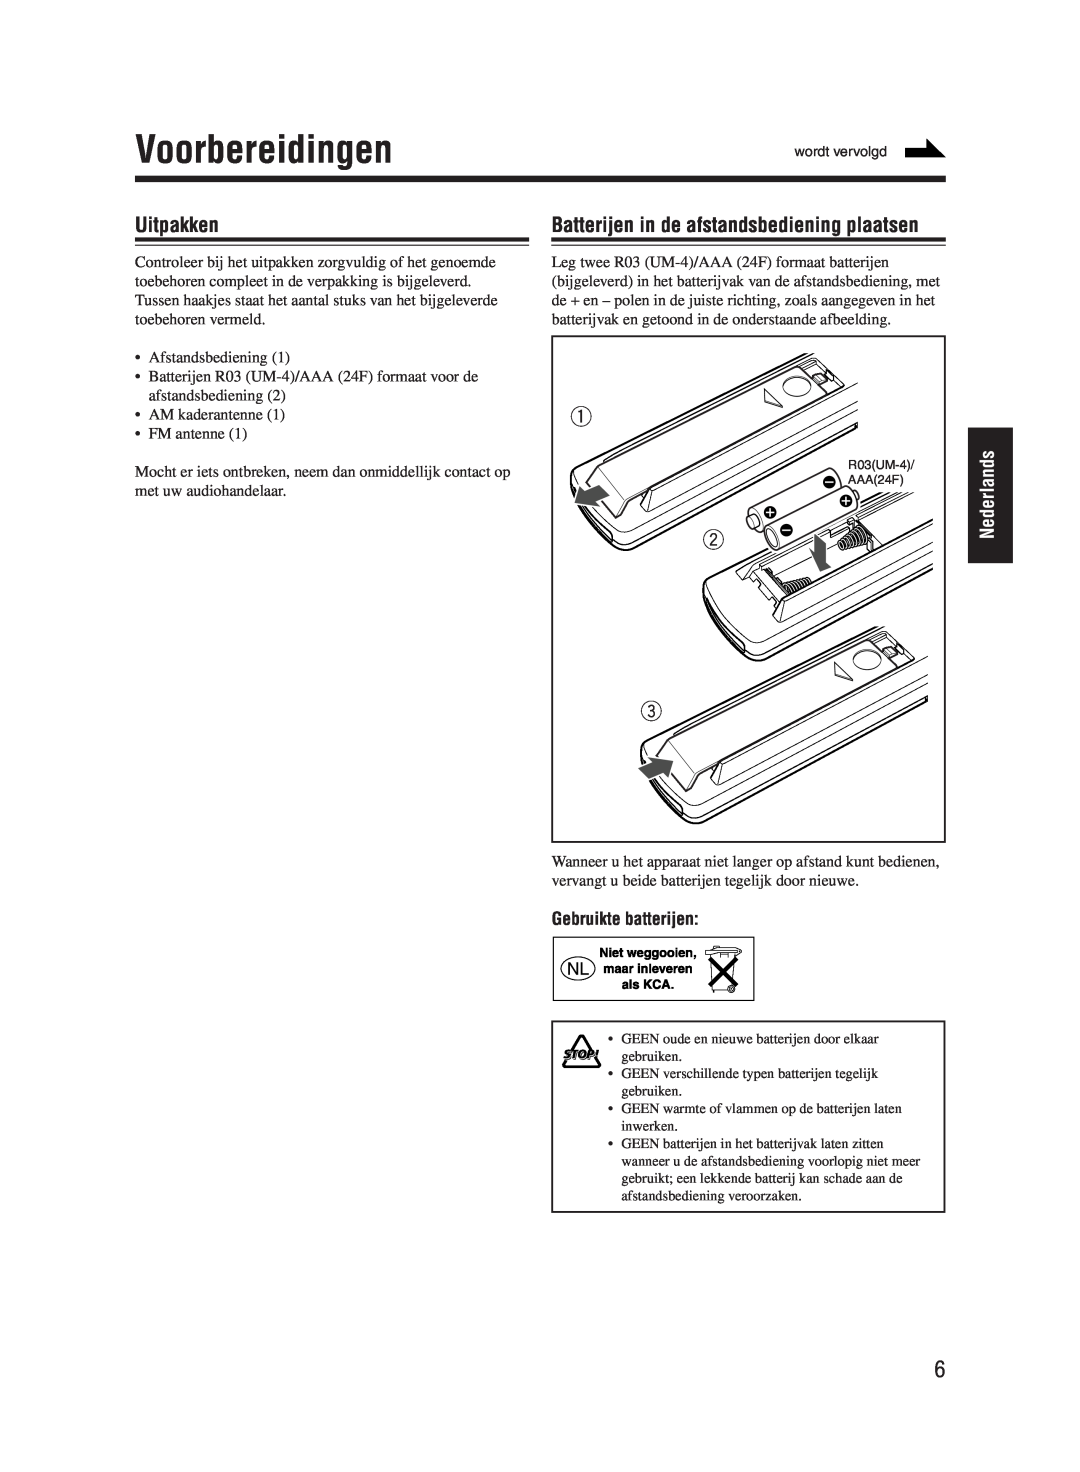 JVC UX-M55 manual Voorbereidingen, Uitpakken, Batterijen in de afstandsbediening plaatsen, Nederlands, Gebruikte batterijen 